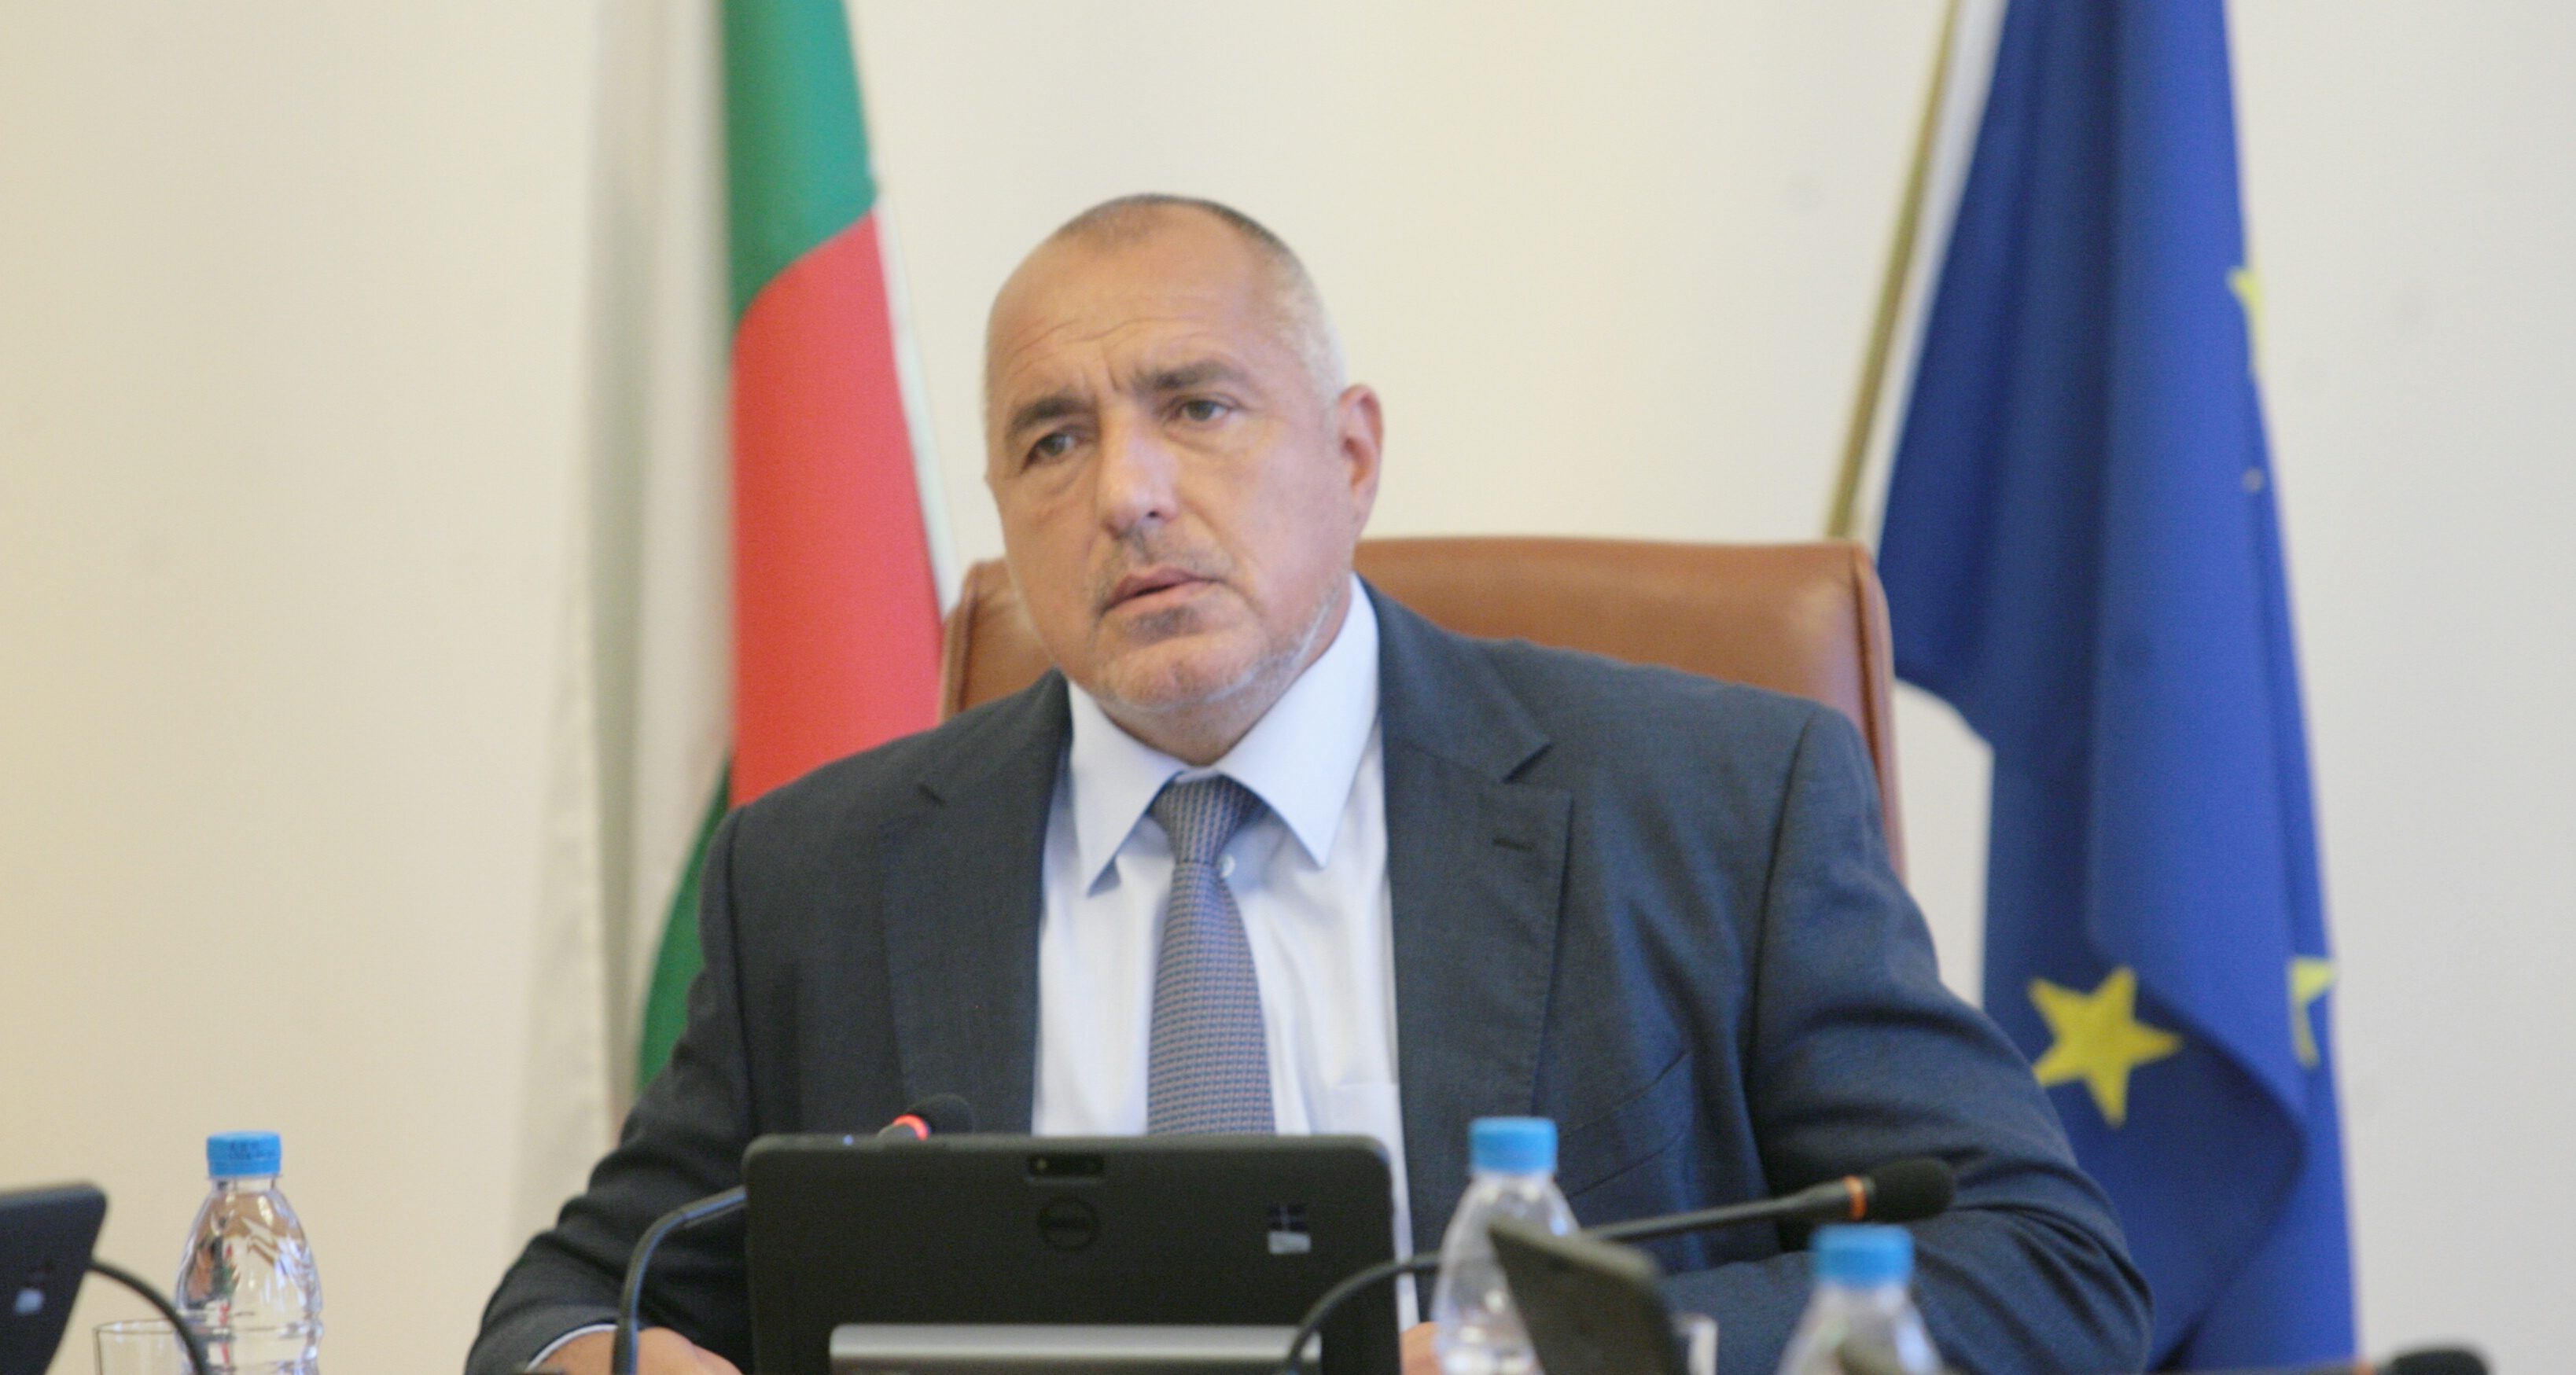 България пази успешно границите на Европа. Това написа премиерът Бойко